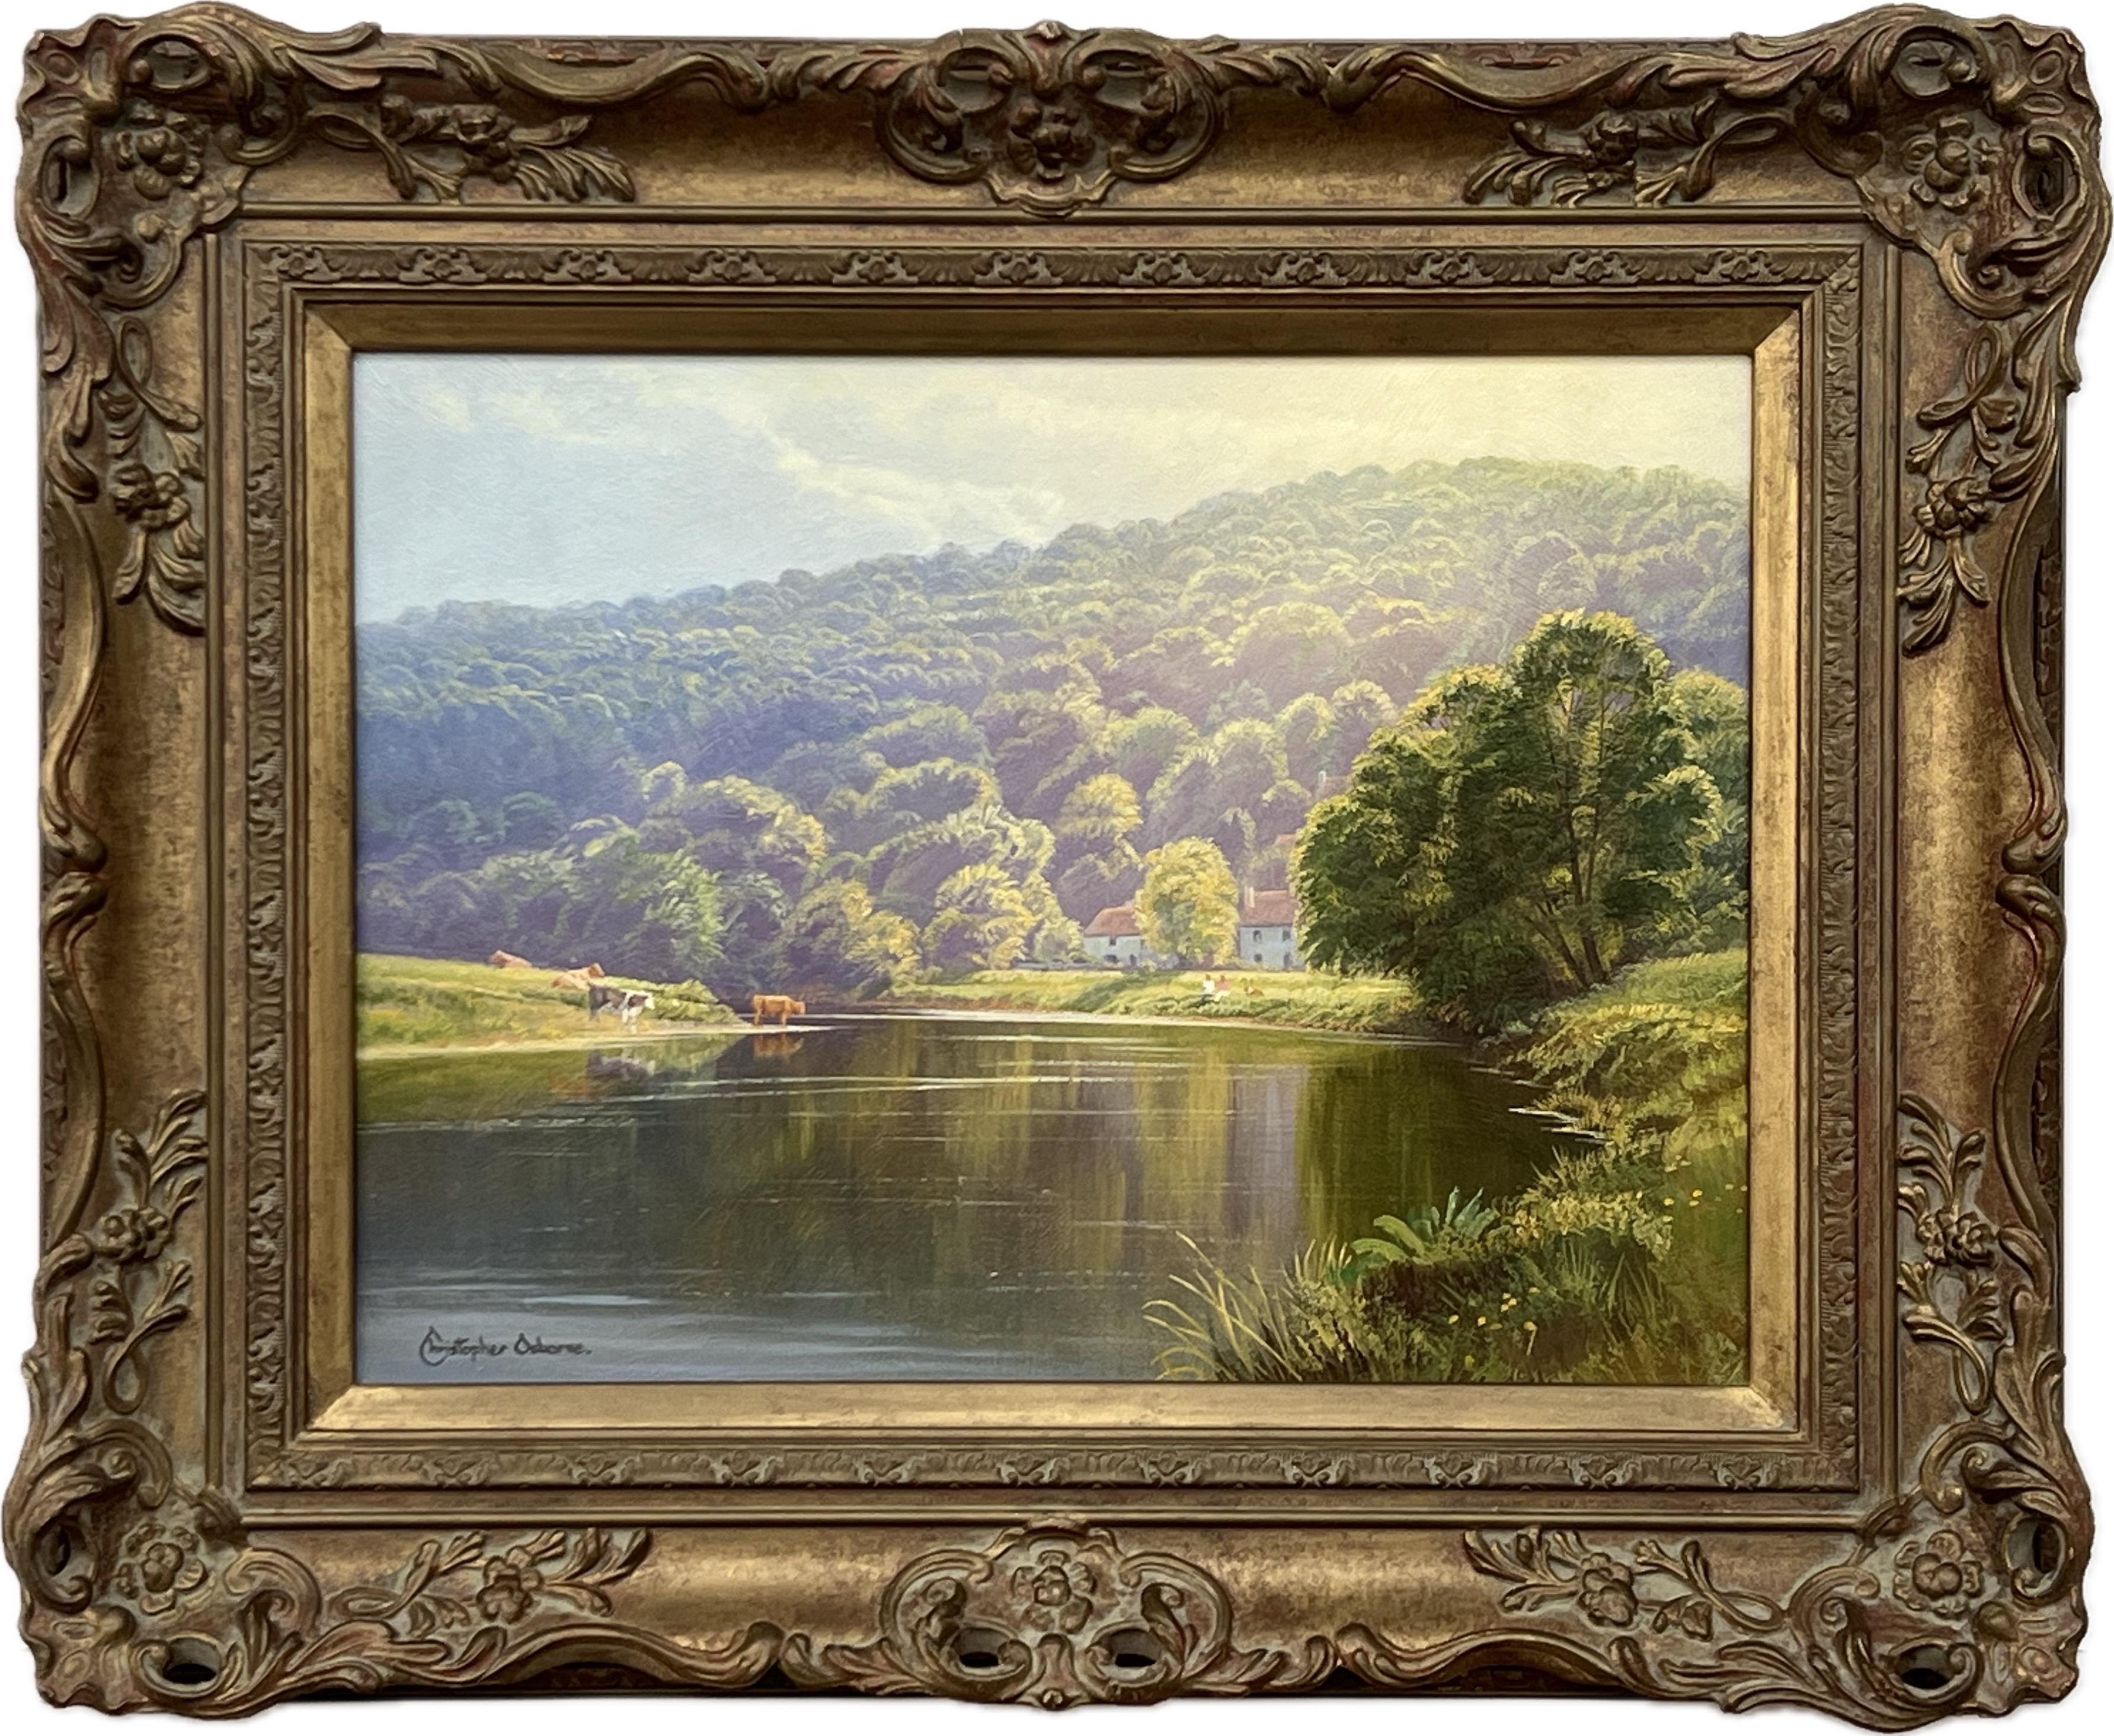 Sommerszene auf Baum gefüttertem Fluss mit Vieh in englischer Landschaft im Sonnenschein